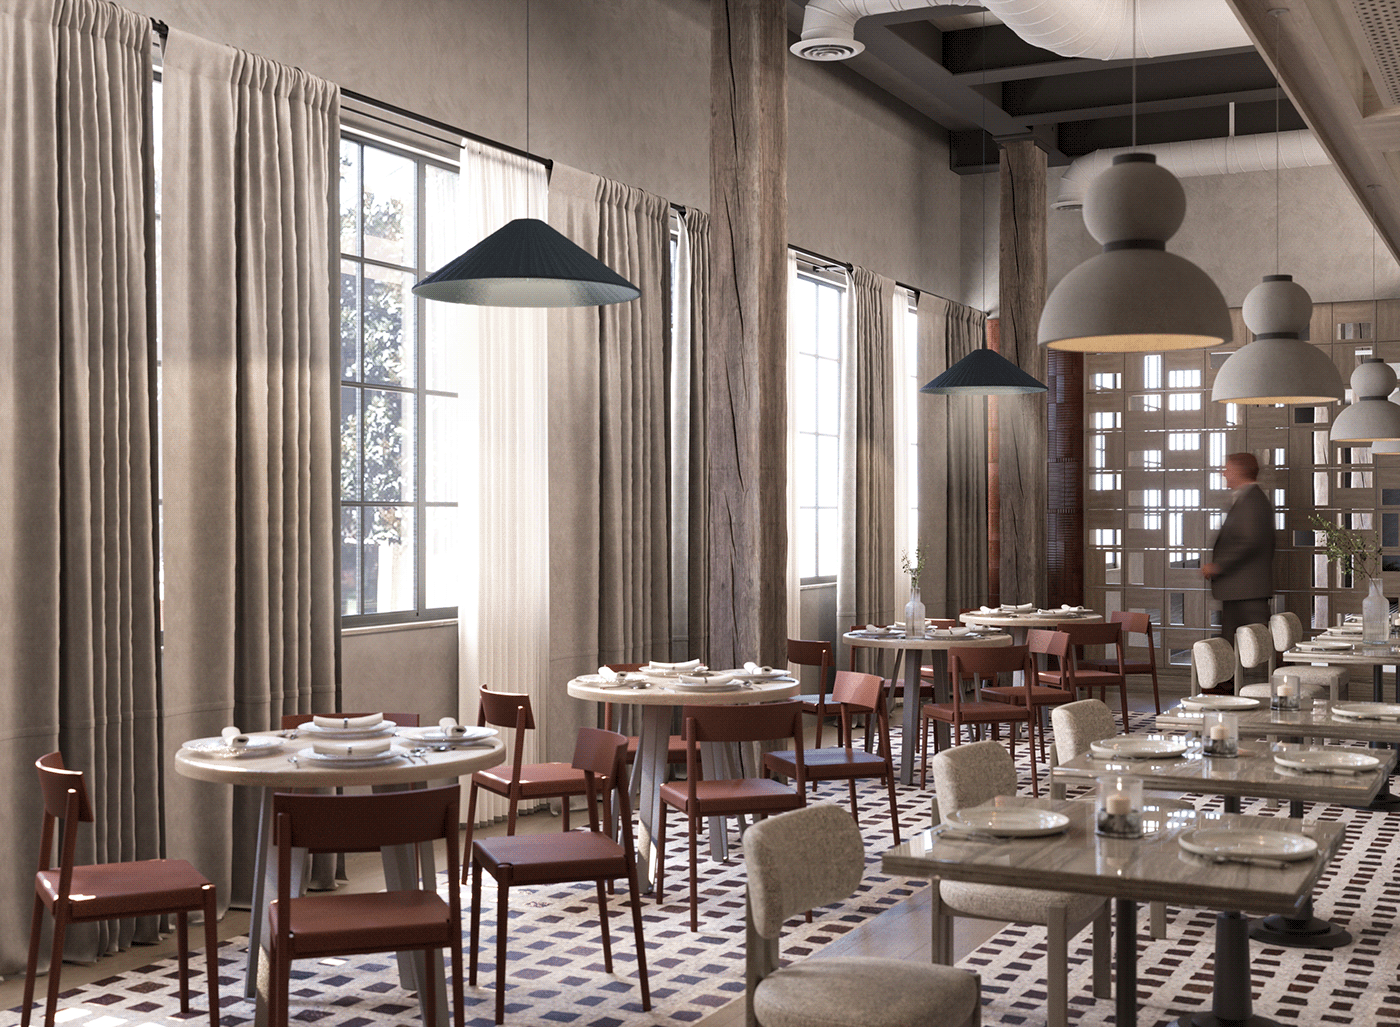 3ds max architecture visualization interior design  corona archviz Render modern 3D restaurant